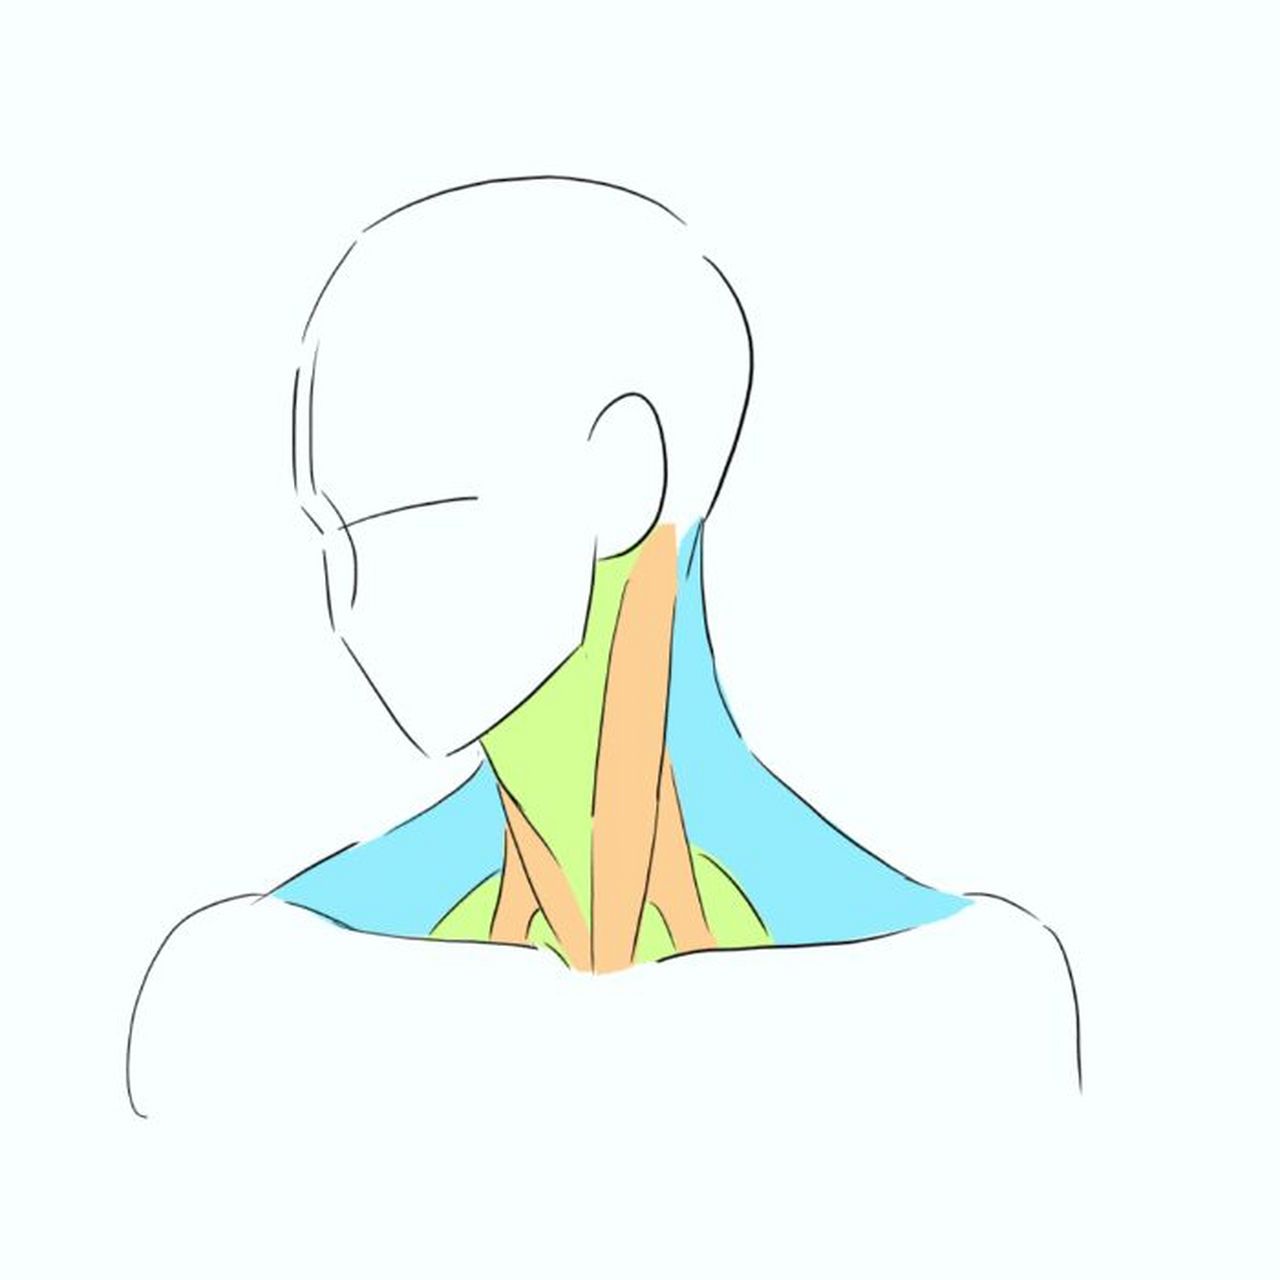 脖子肌肉线条图片